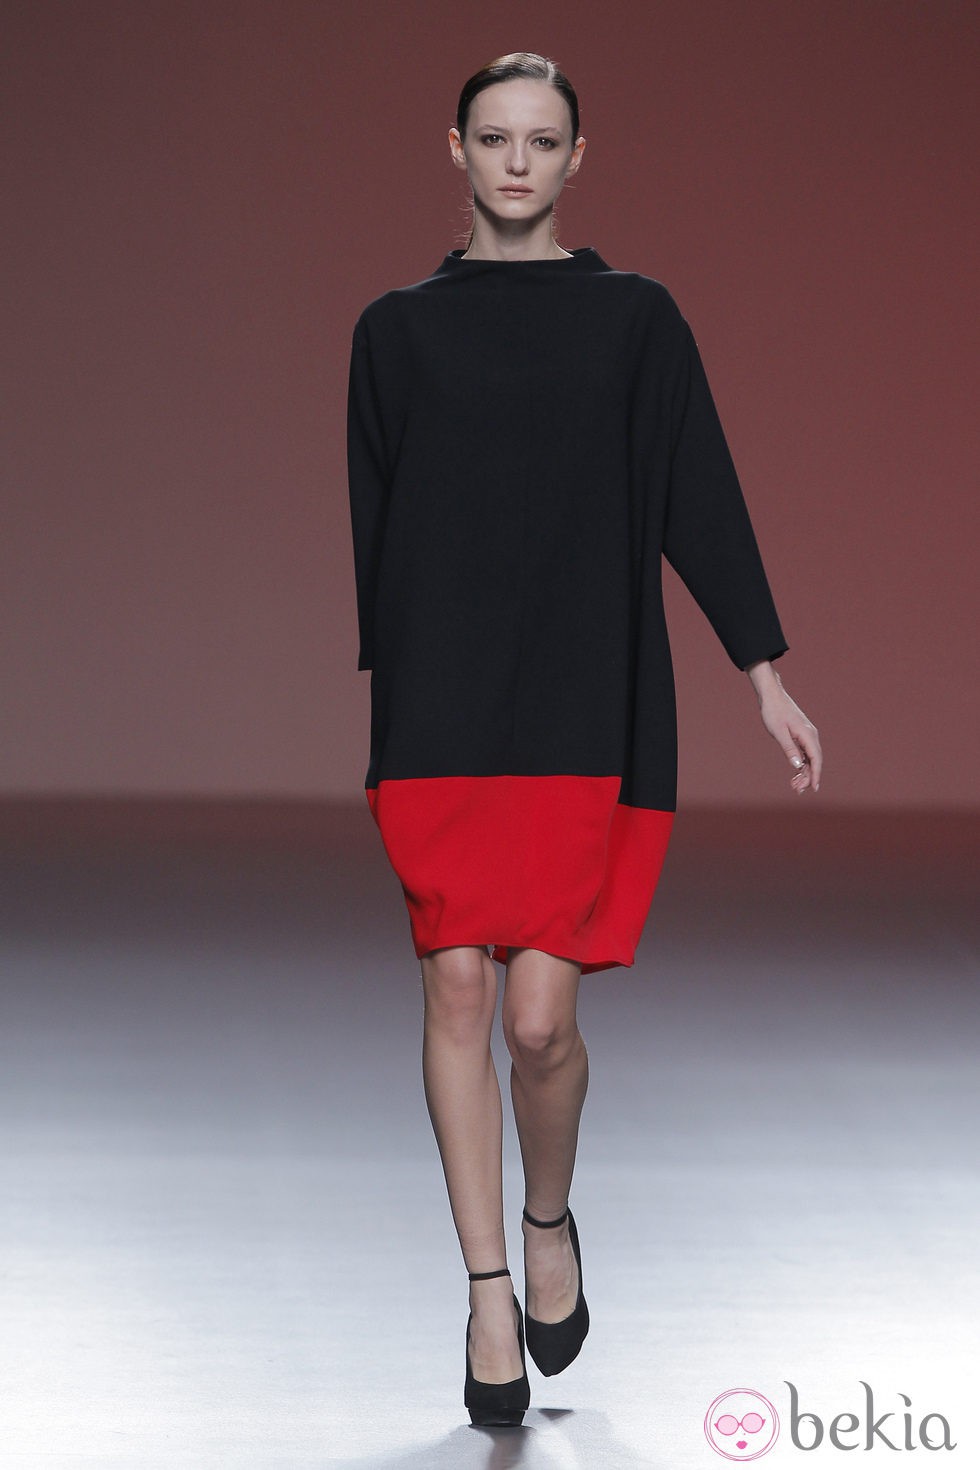 Vestido saco bicolor de la colección otoño/invierno 2013/2014 de A.A. de Amaya Arzuaga en Madrid Fashion Week